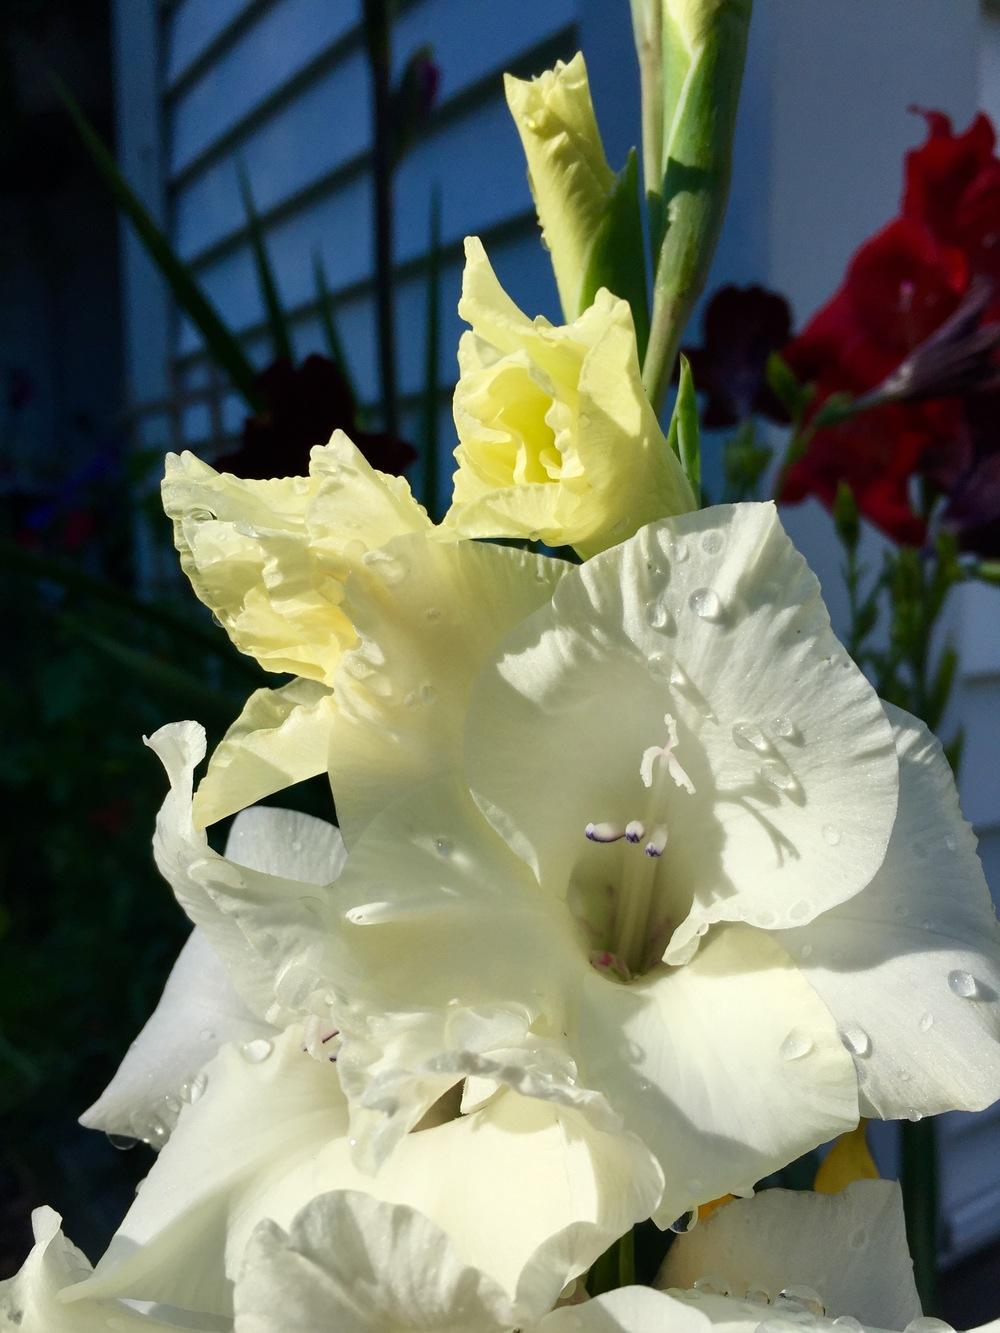 Photo of Gladiola (Gladiolus) uploaded by PoppyLady420